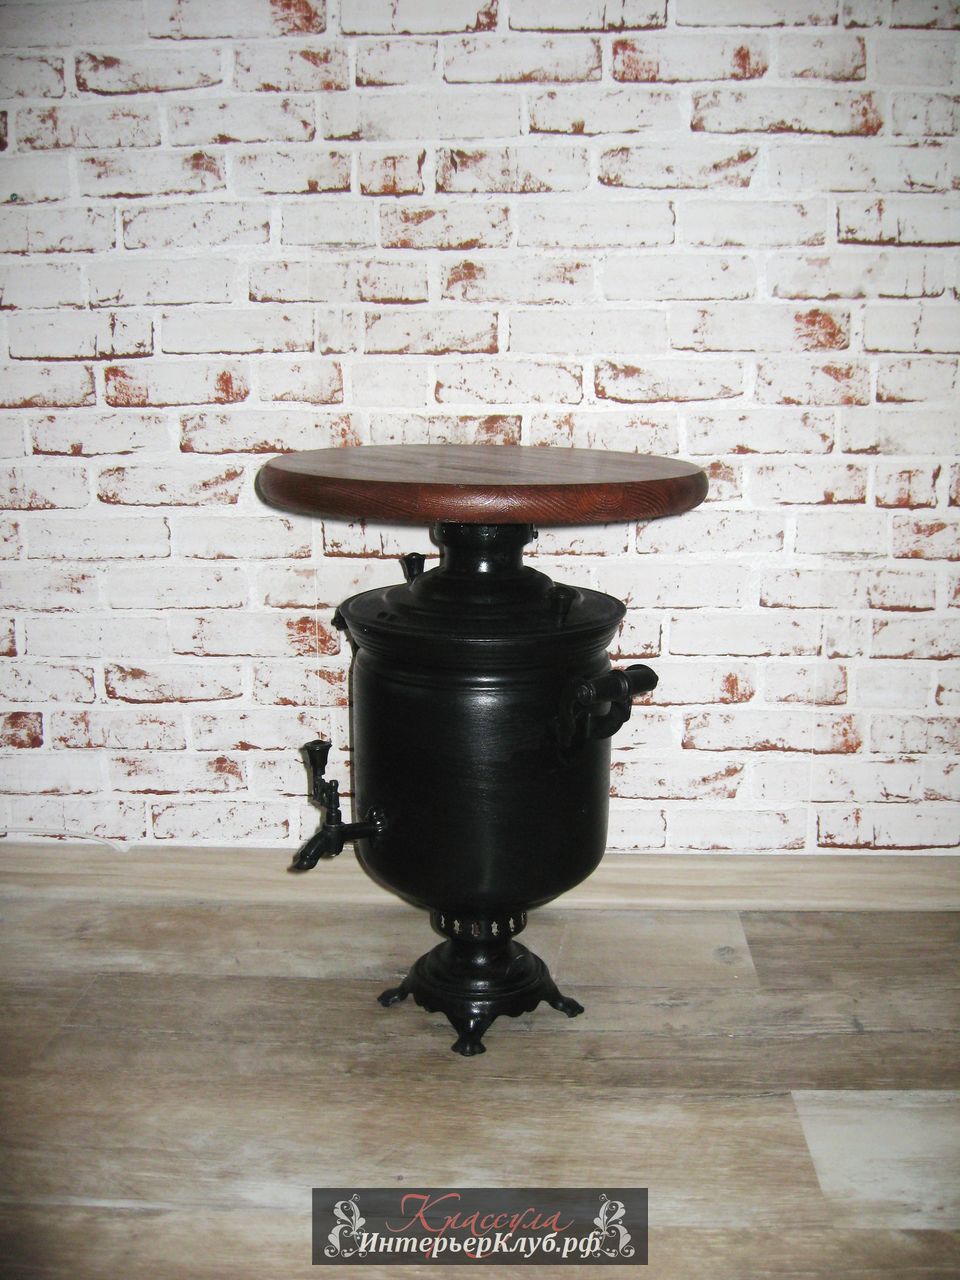 43 Чайный - кофейный столик Самовар -  настоящий  угольный самовар 20 века, цвет черный